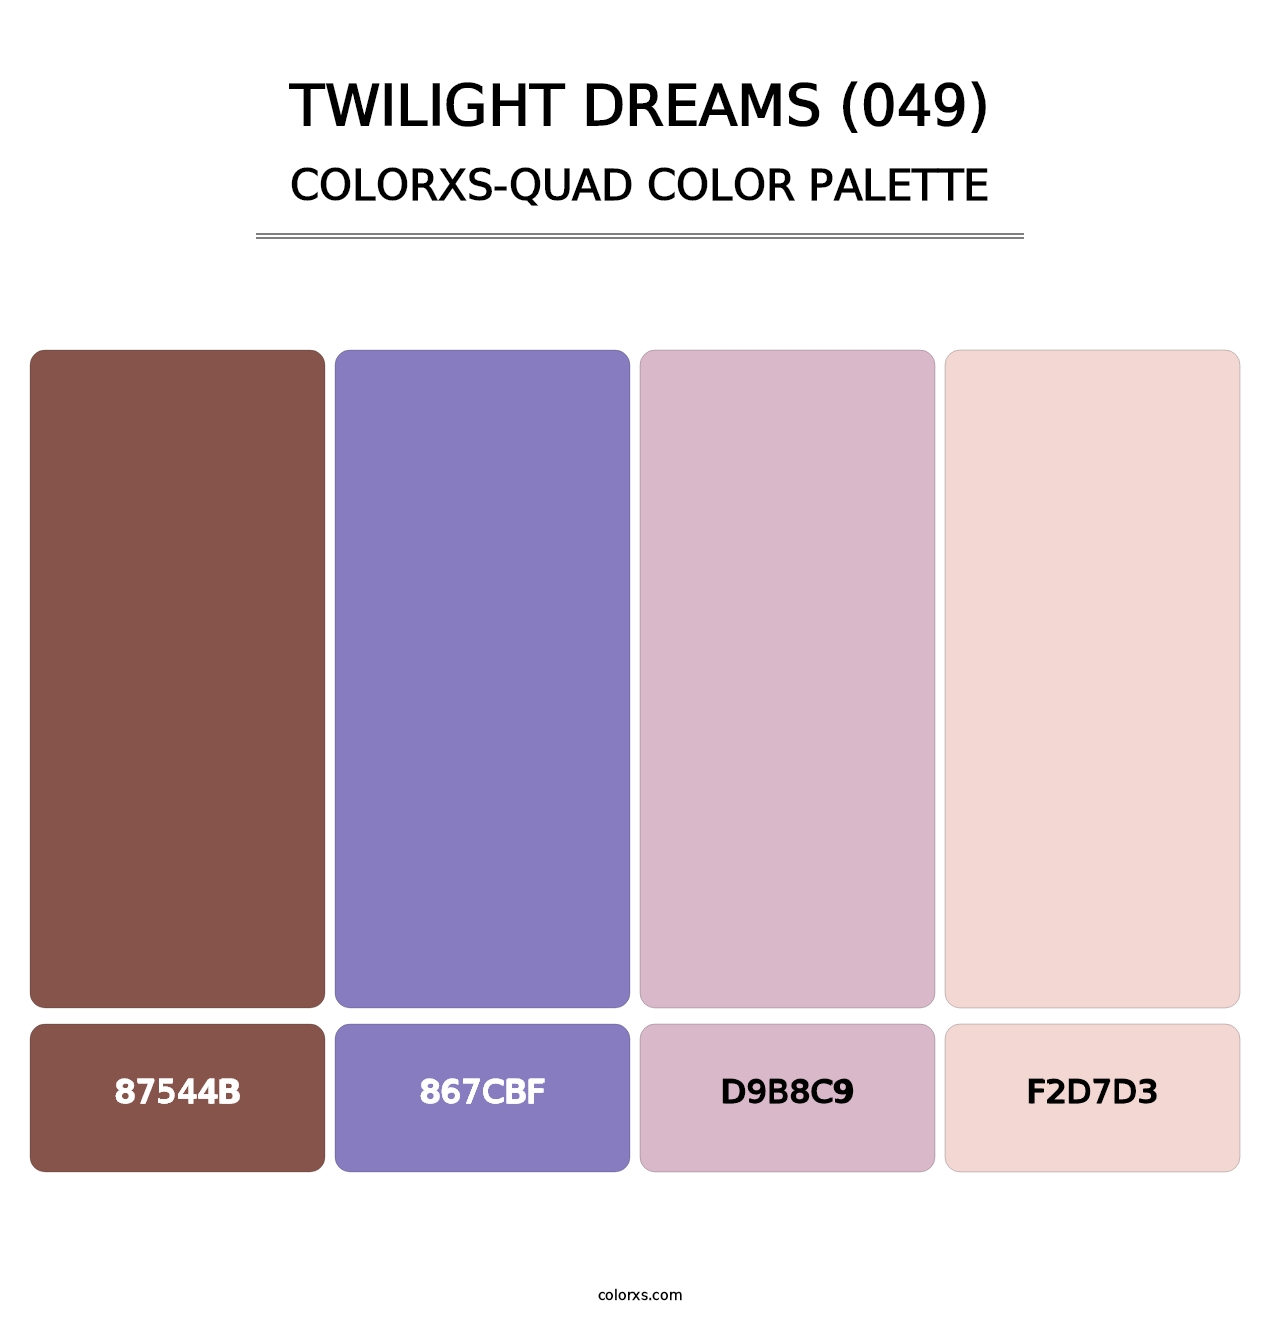 Twilight Dreams (049) - Colorxs Quad Palette